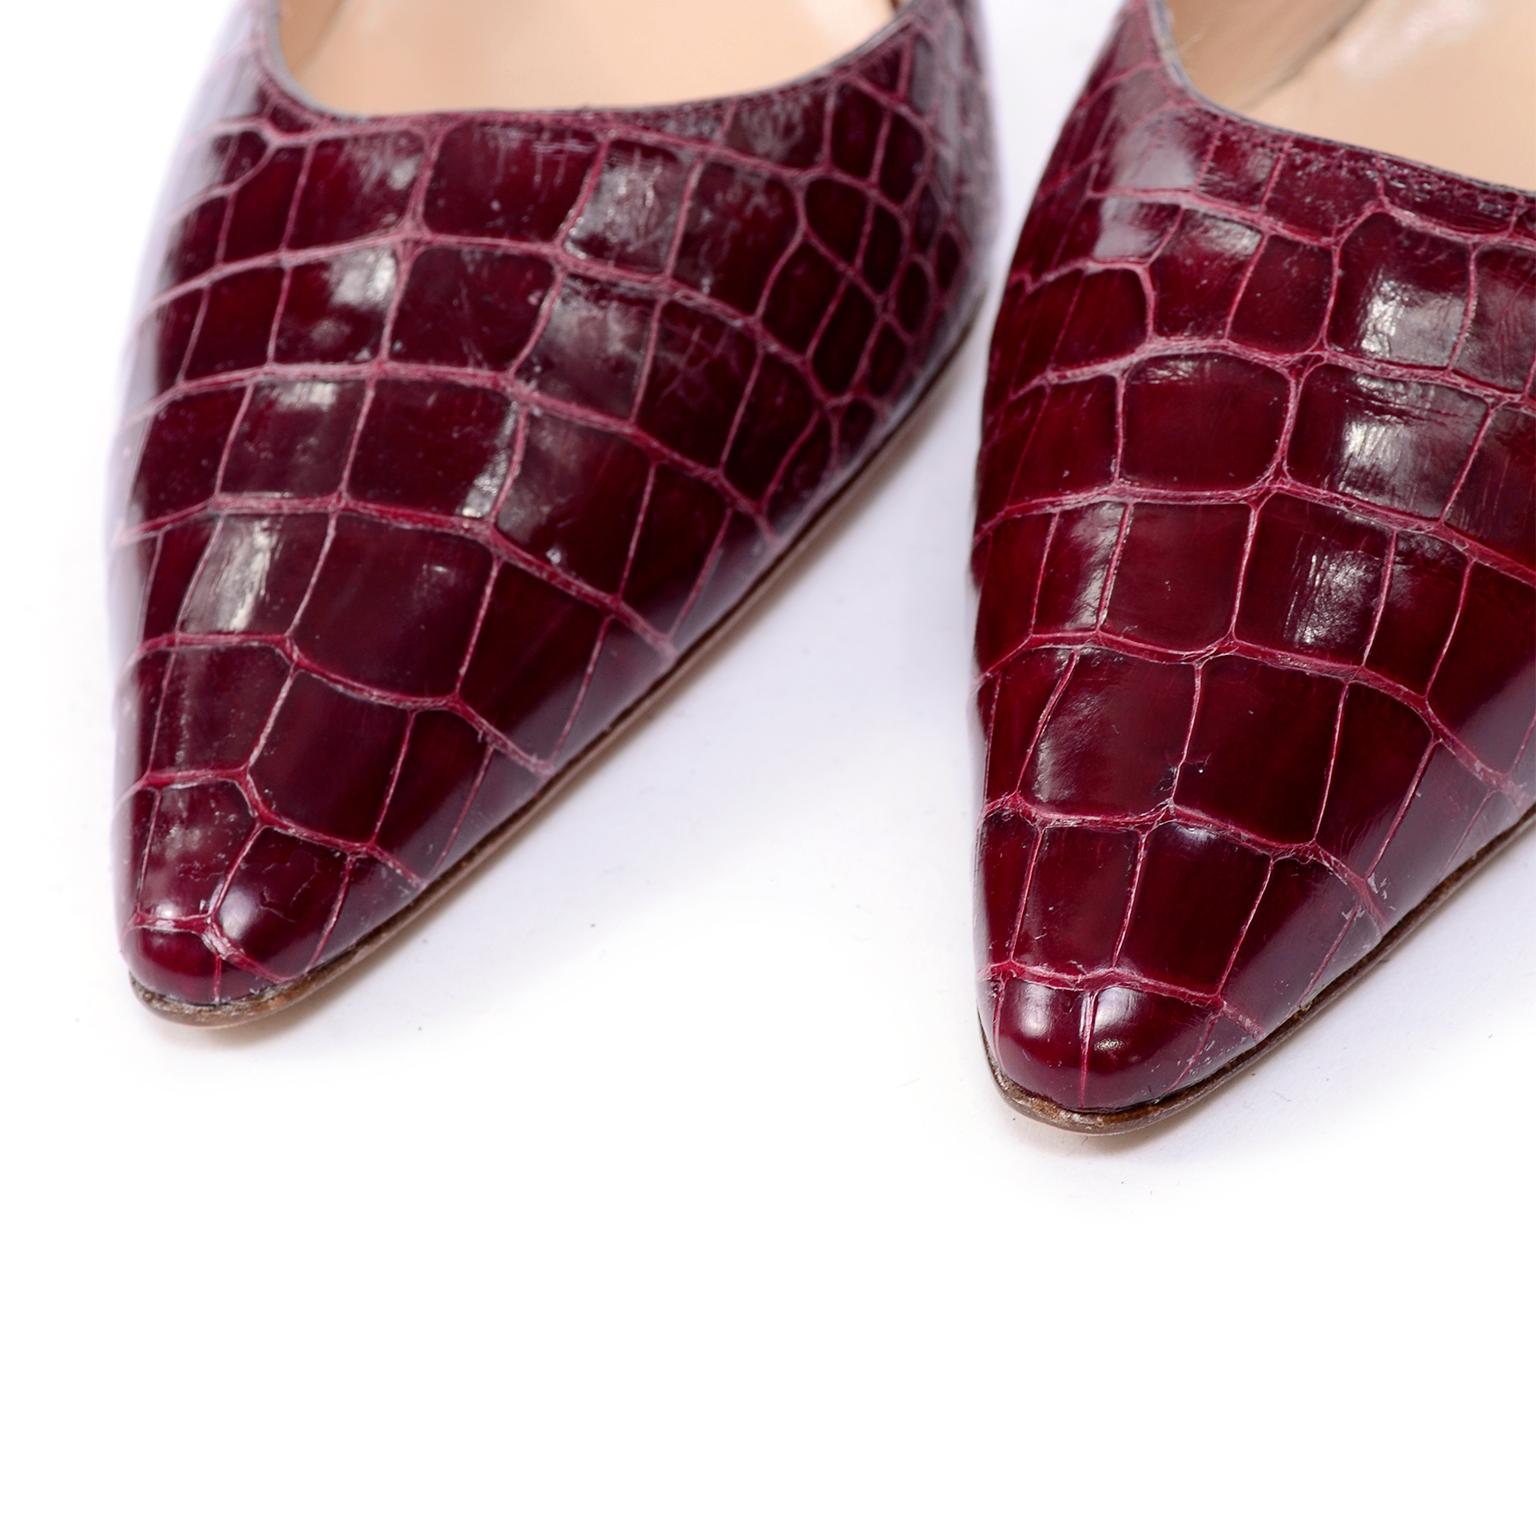 Brown Manolo Blahnik Shoes Burgundy Crocodile Sling Back Heels 38.5 Size 8